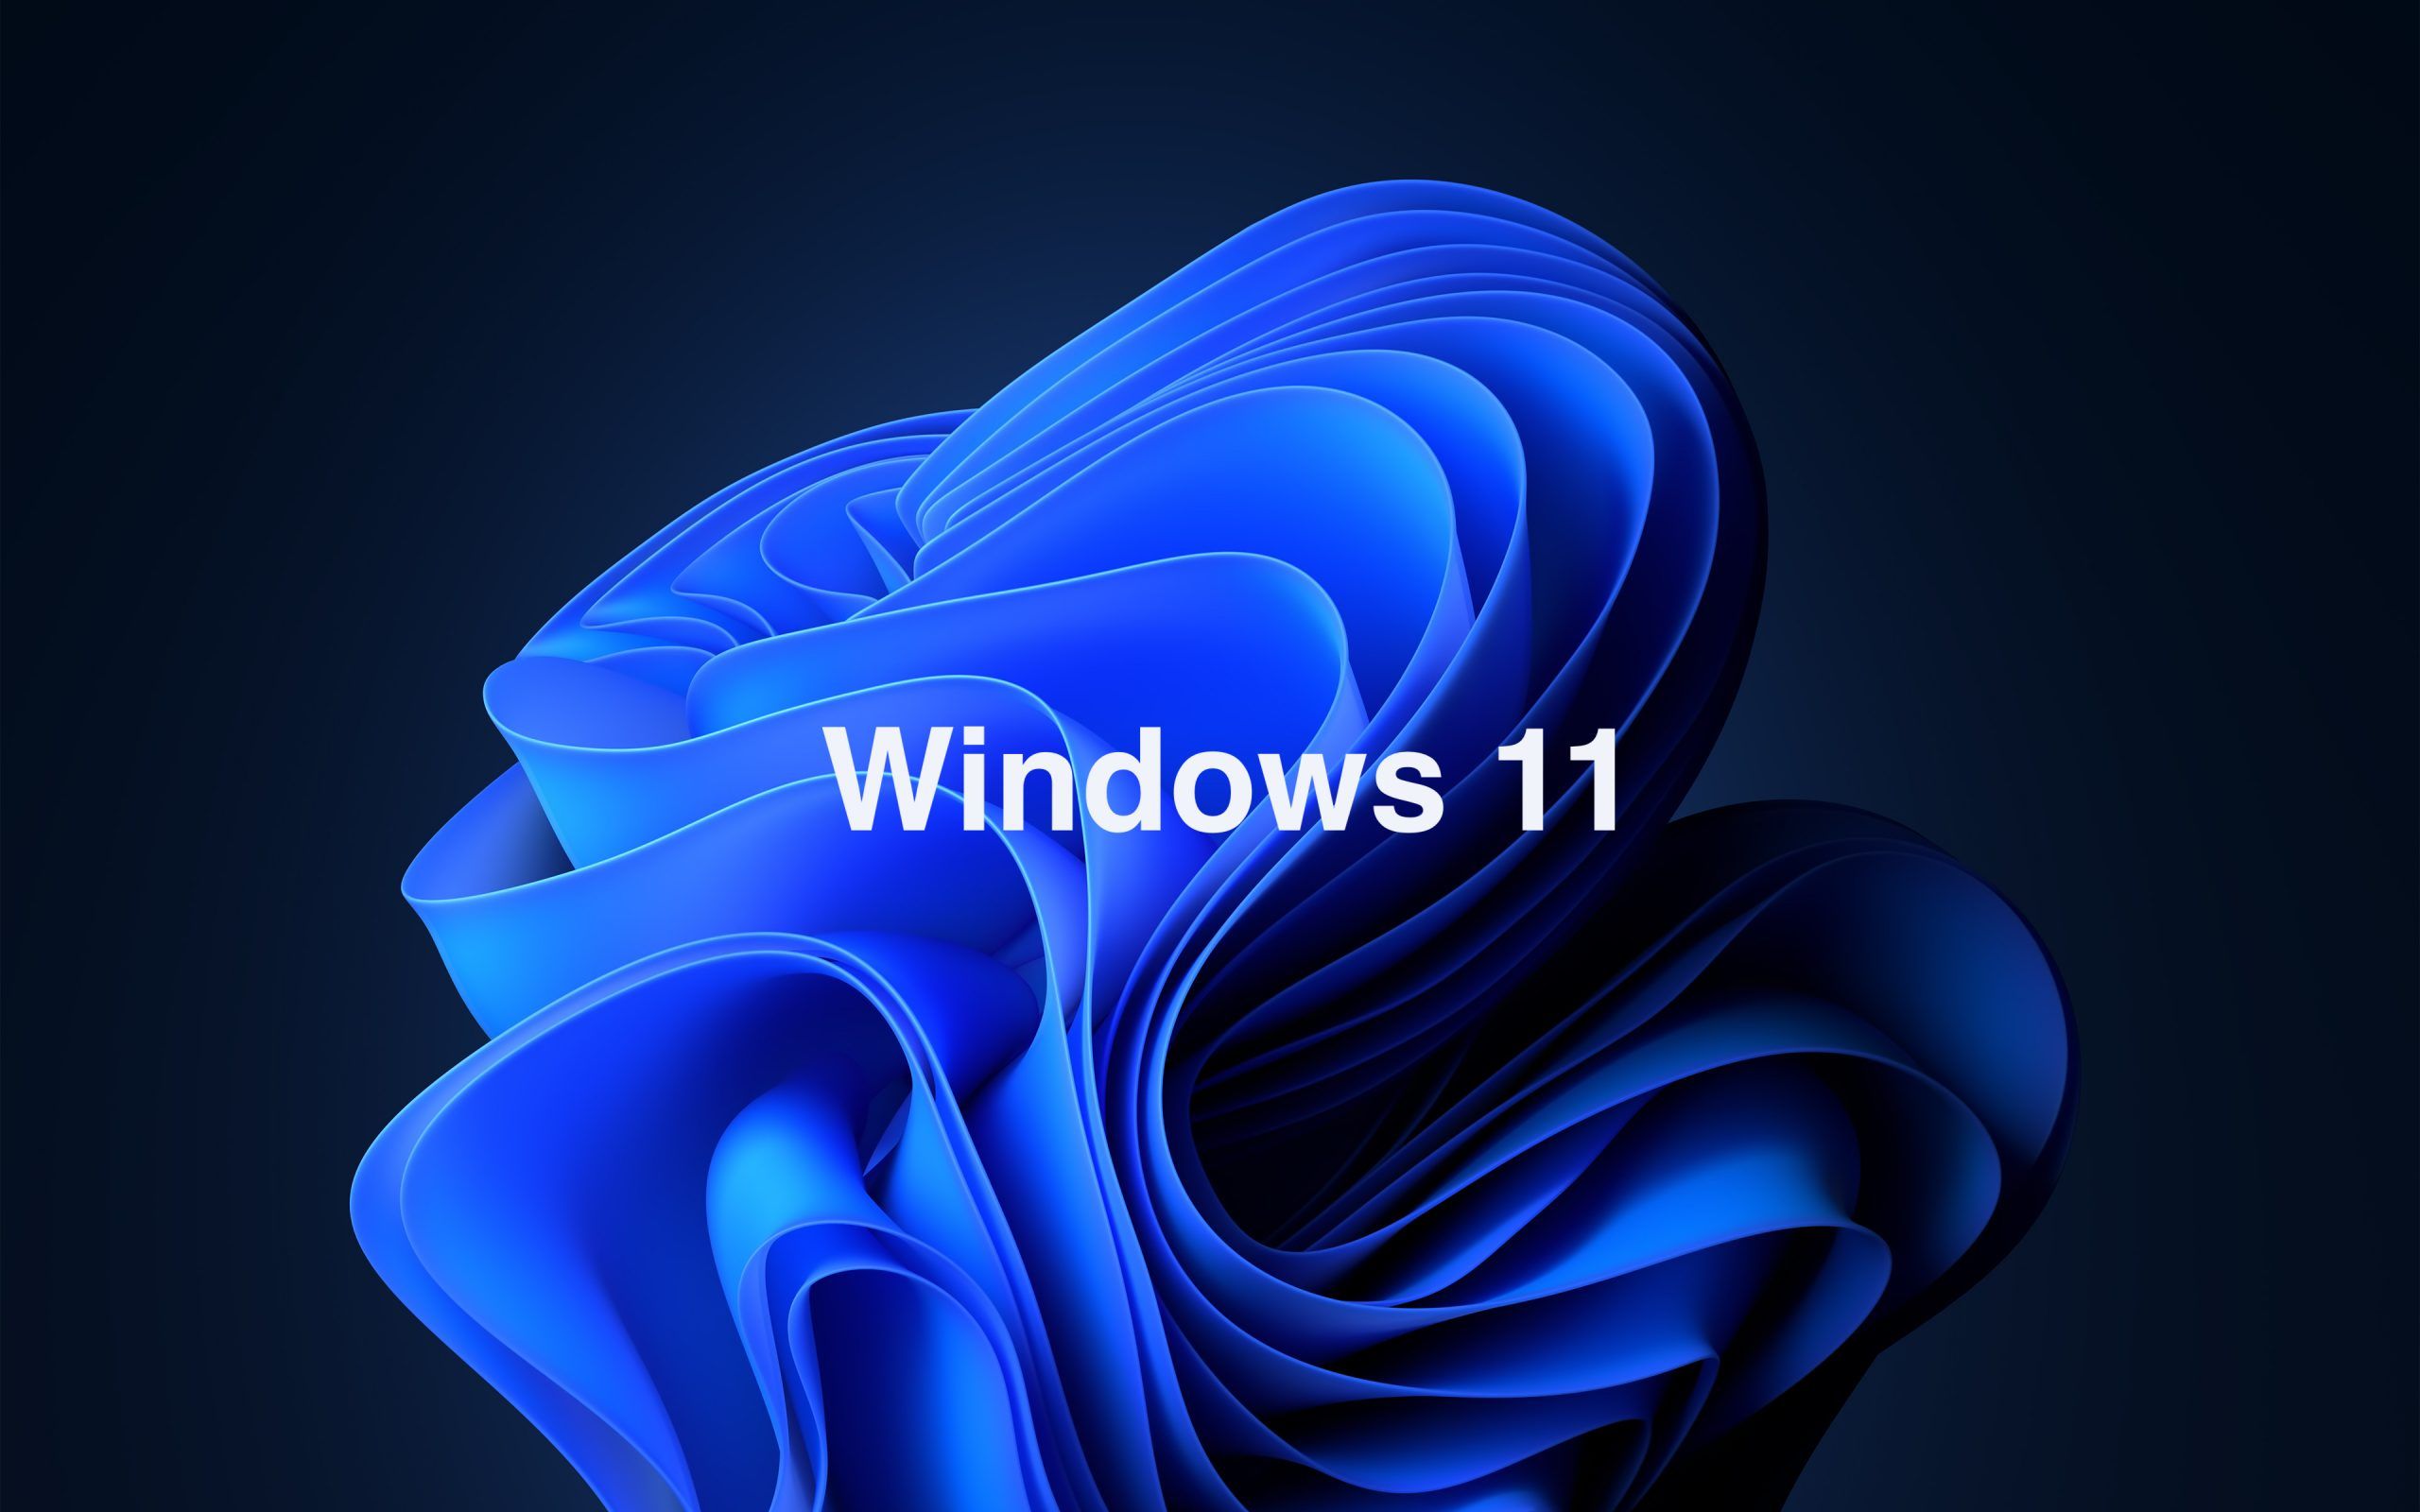 Download Windows 11 Keyboard Wallpaper